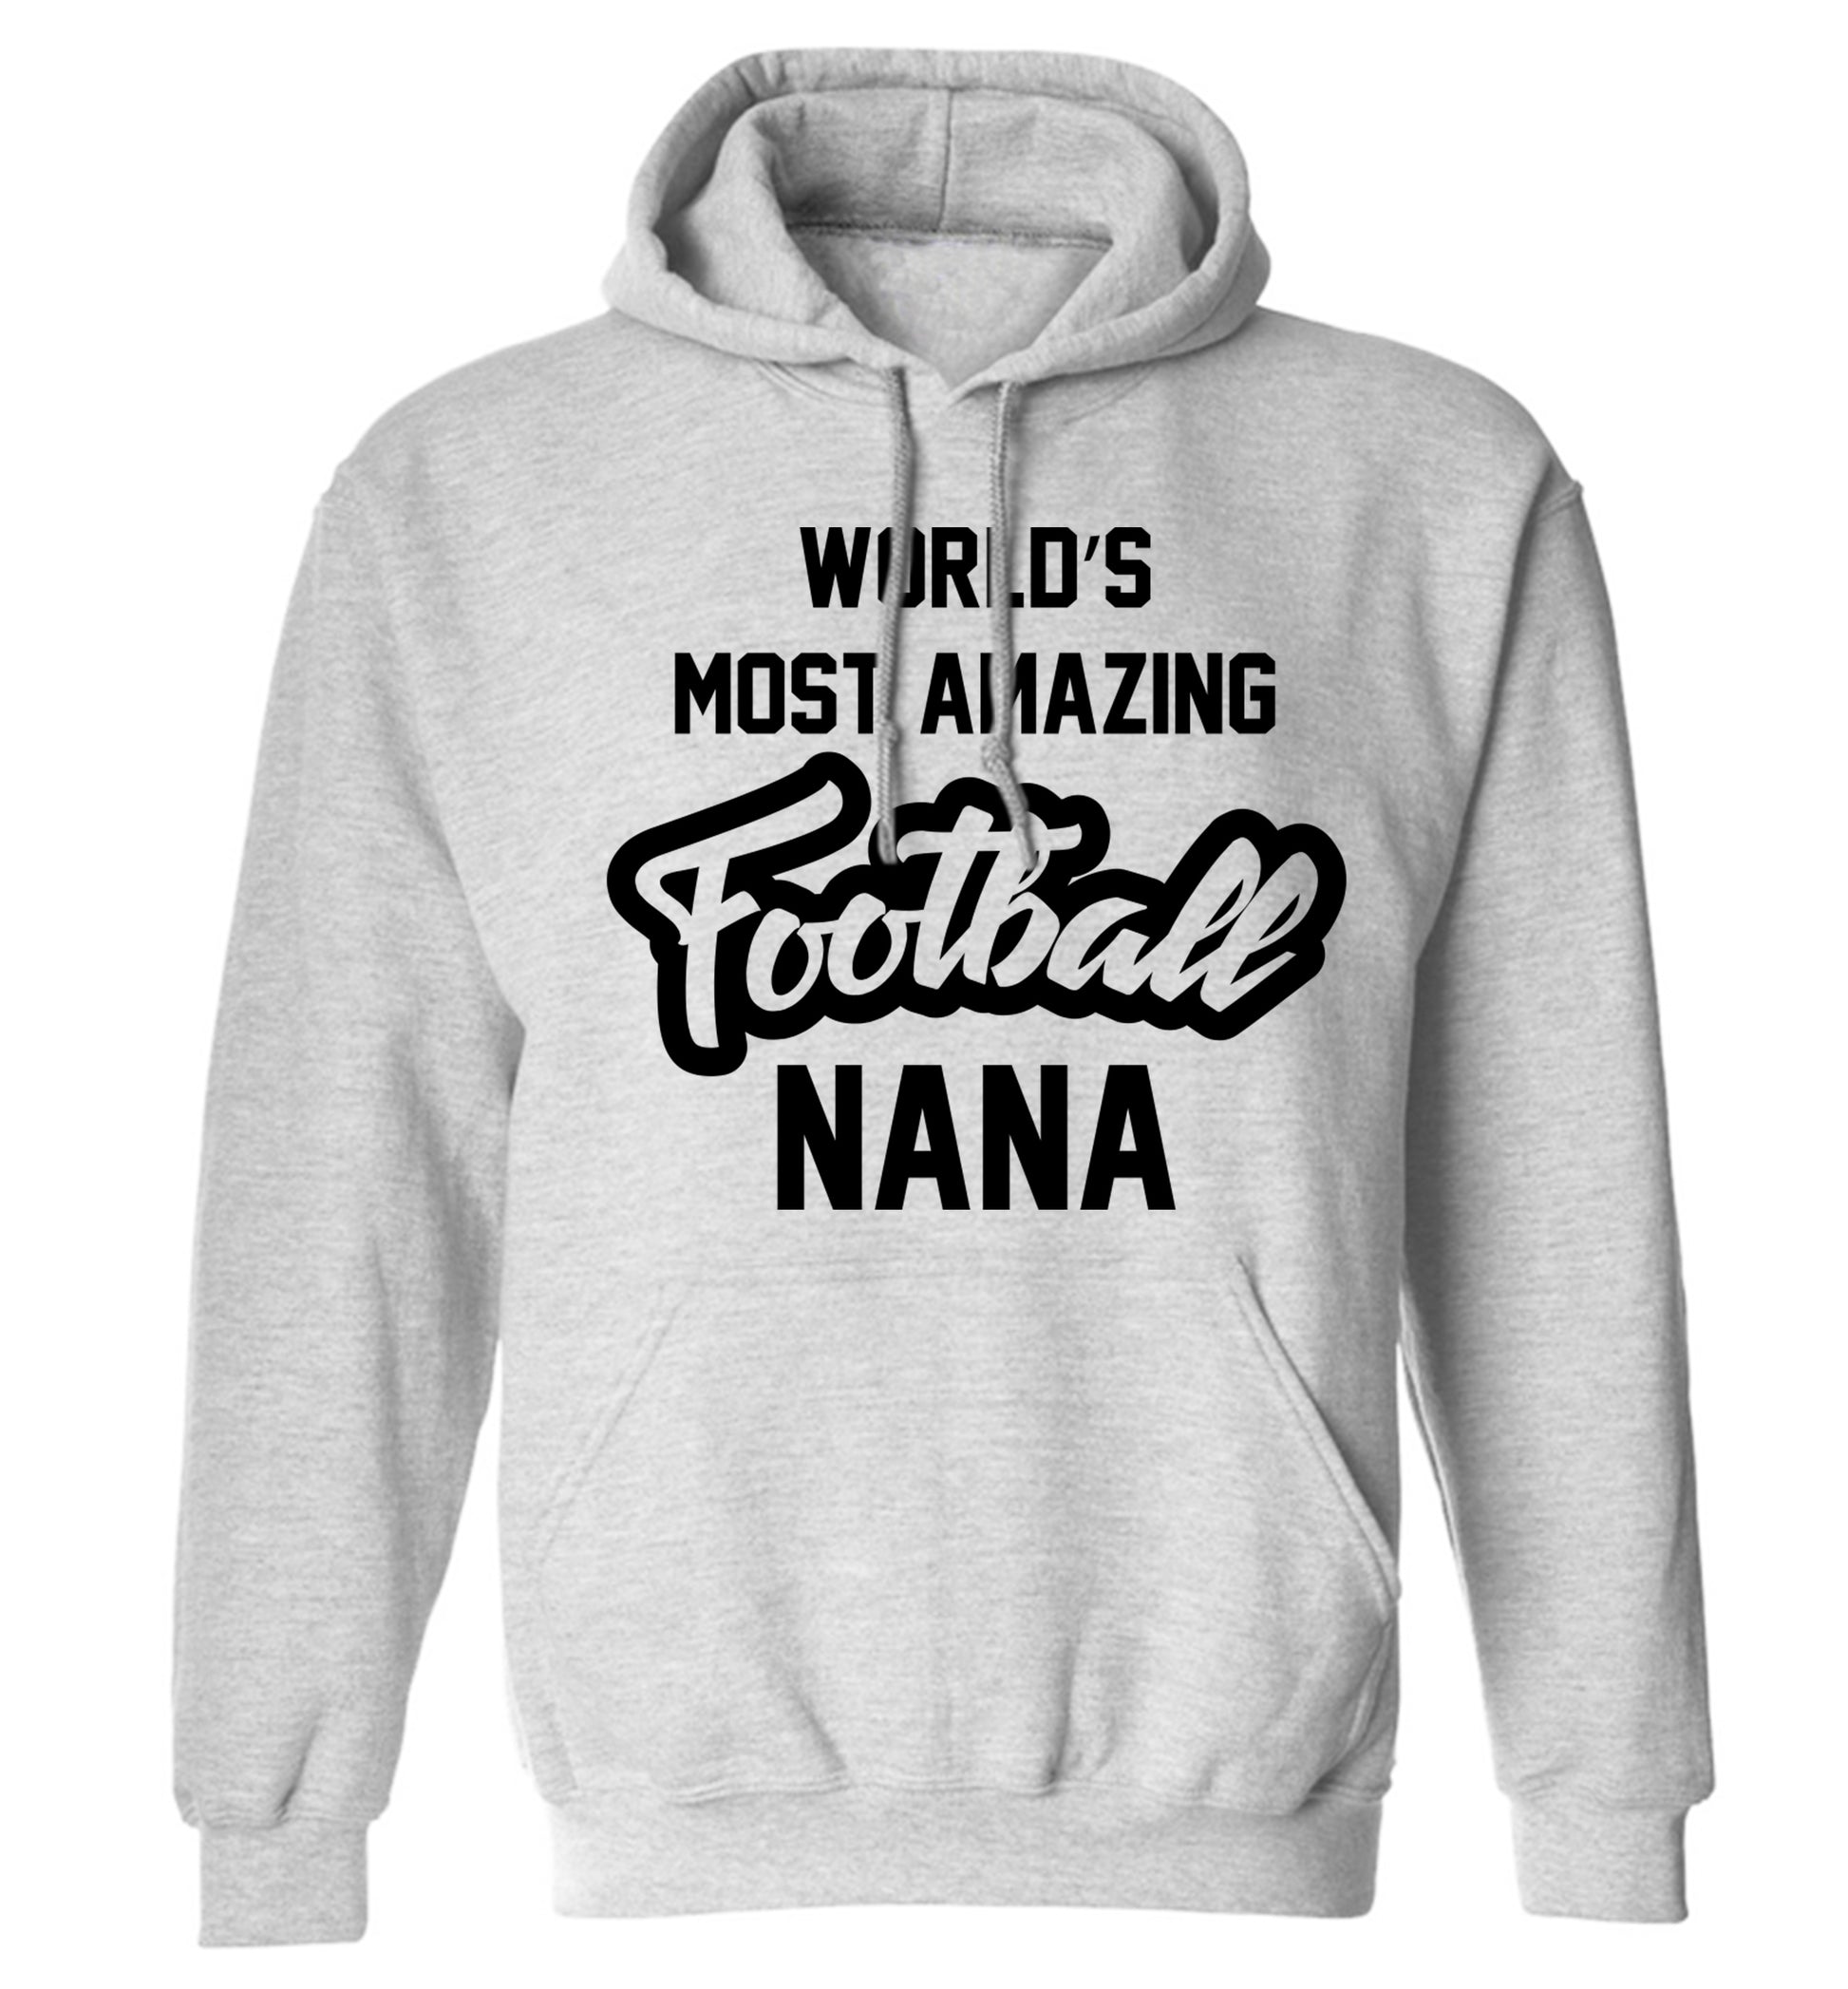 Worlds most amazing football nana adults unisexgrey hoodie 2XL